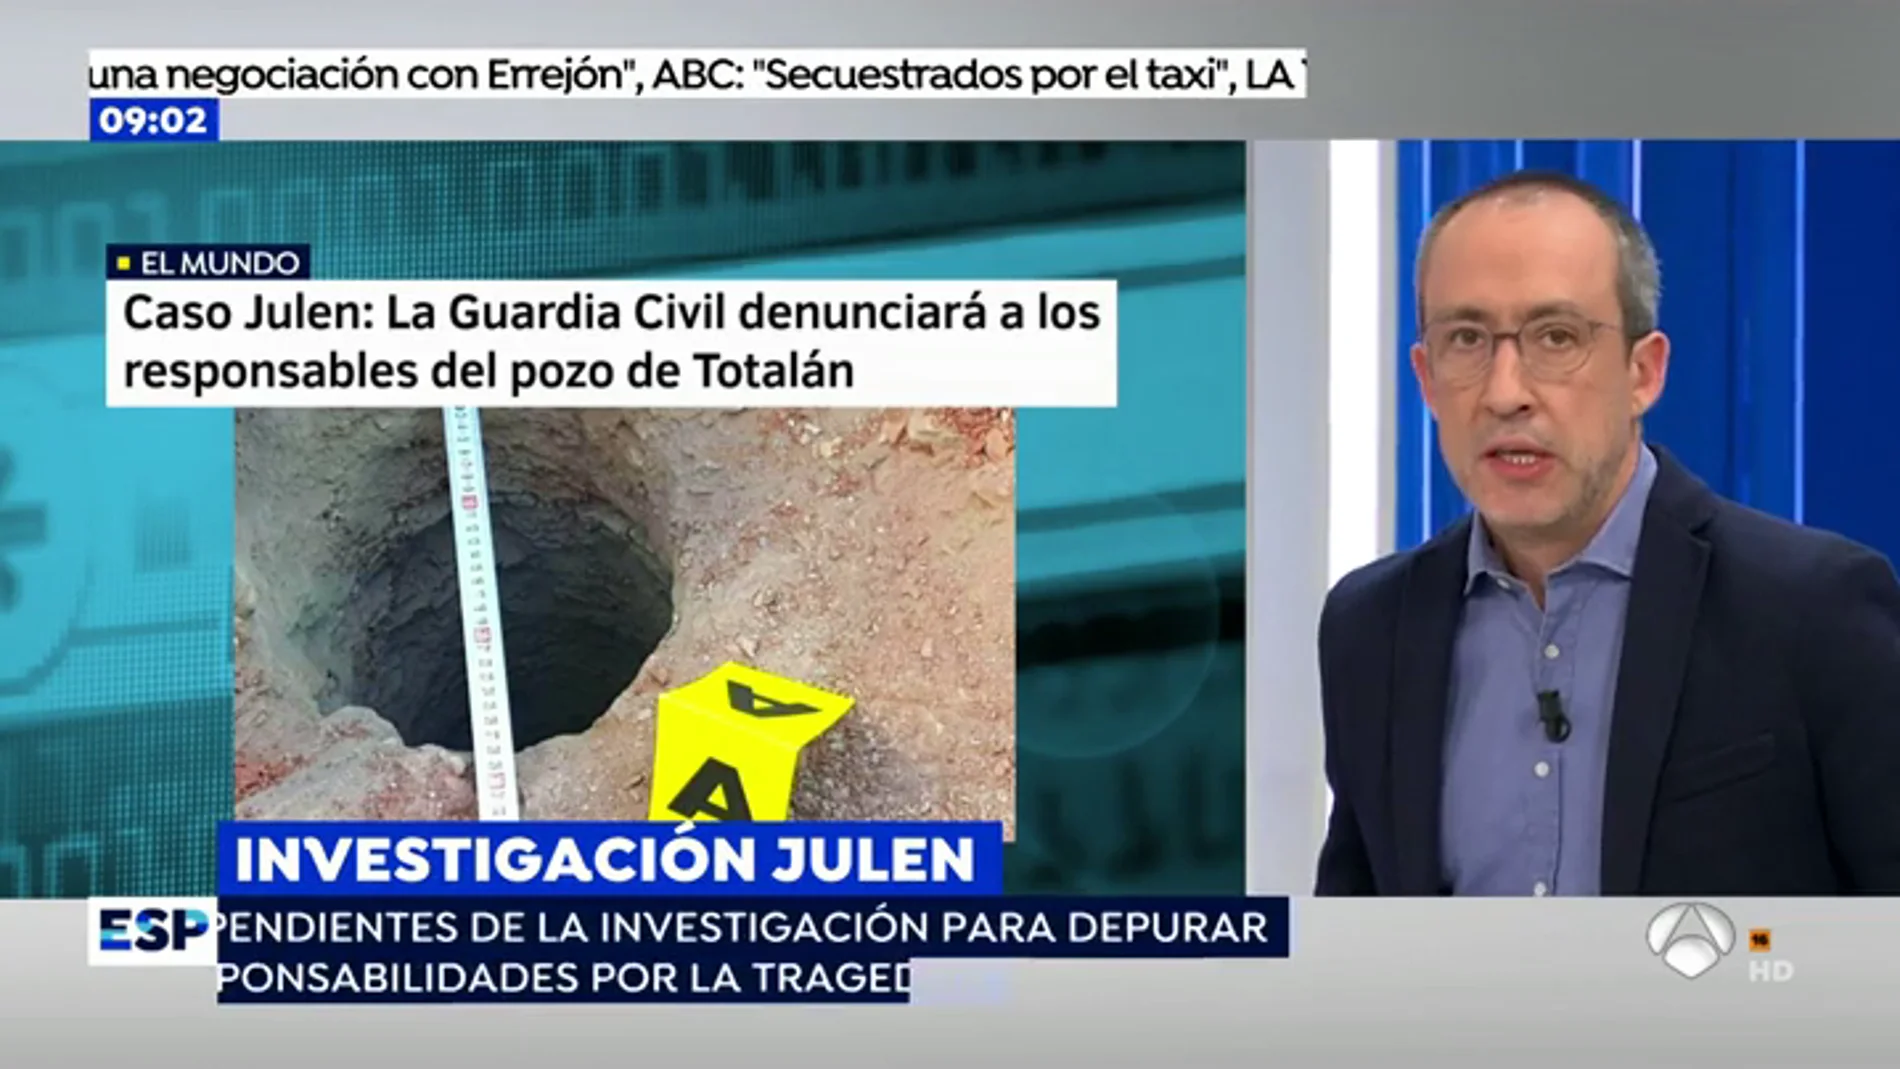 La Guardia Civil denunciará al tío de Julen por el pozo ilegal en la finca de Totalán